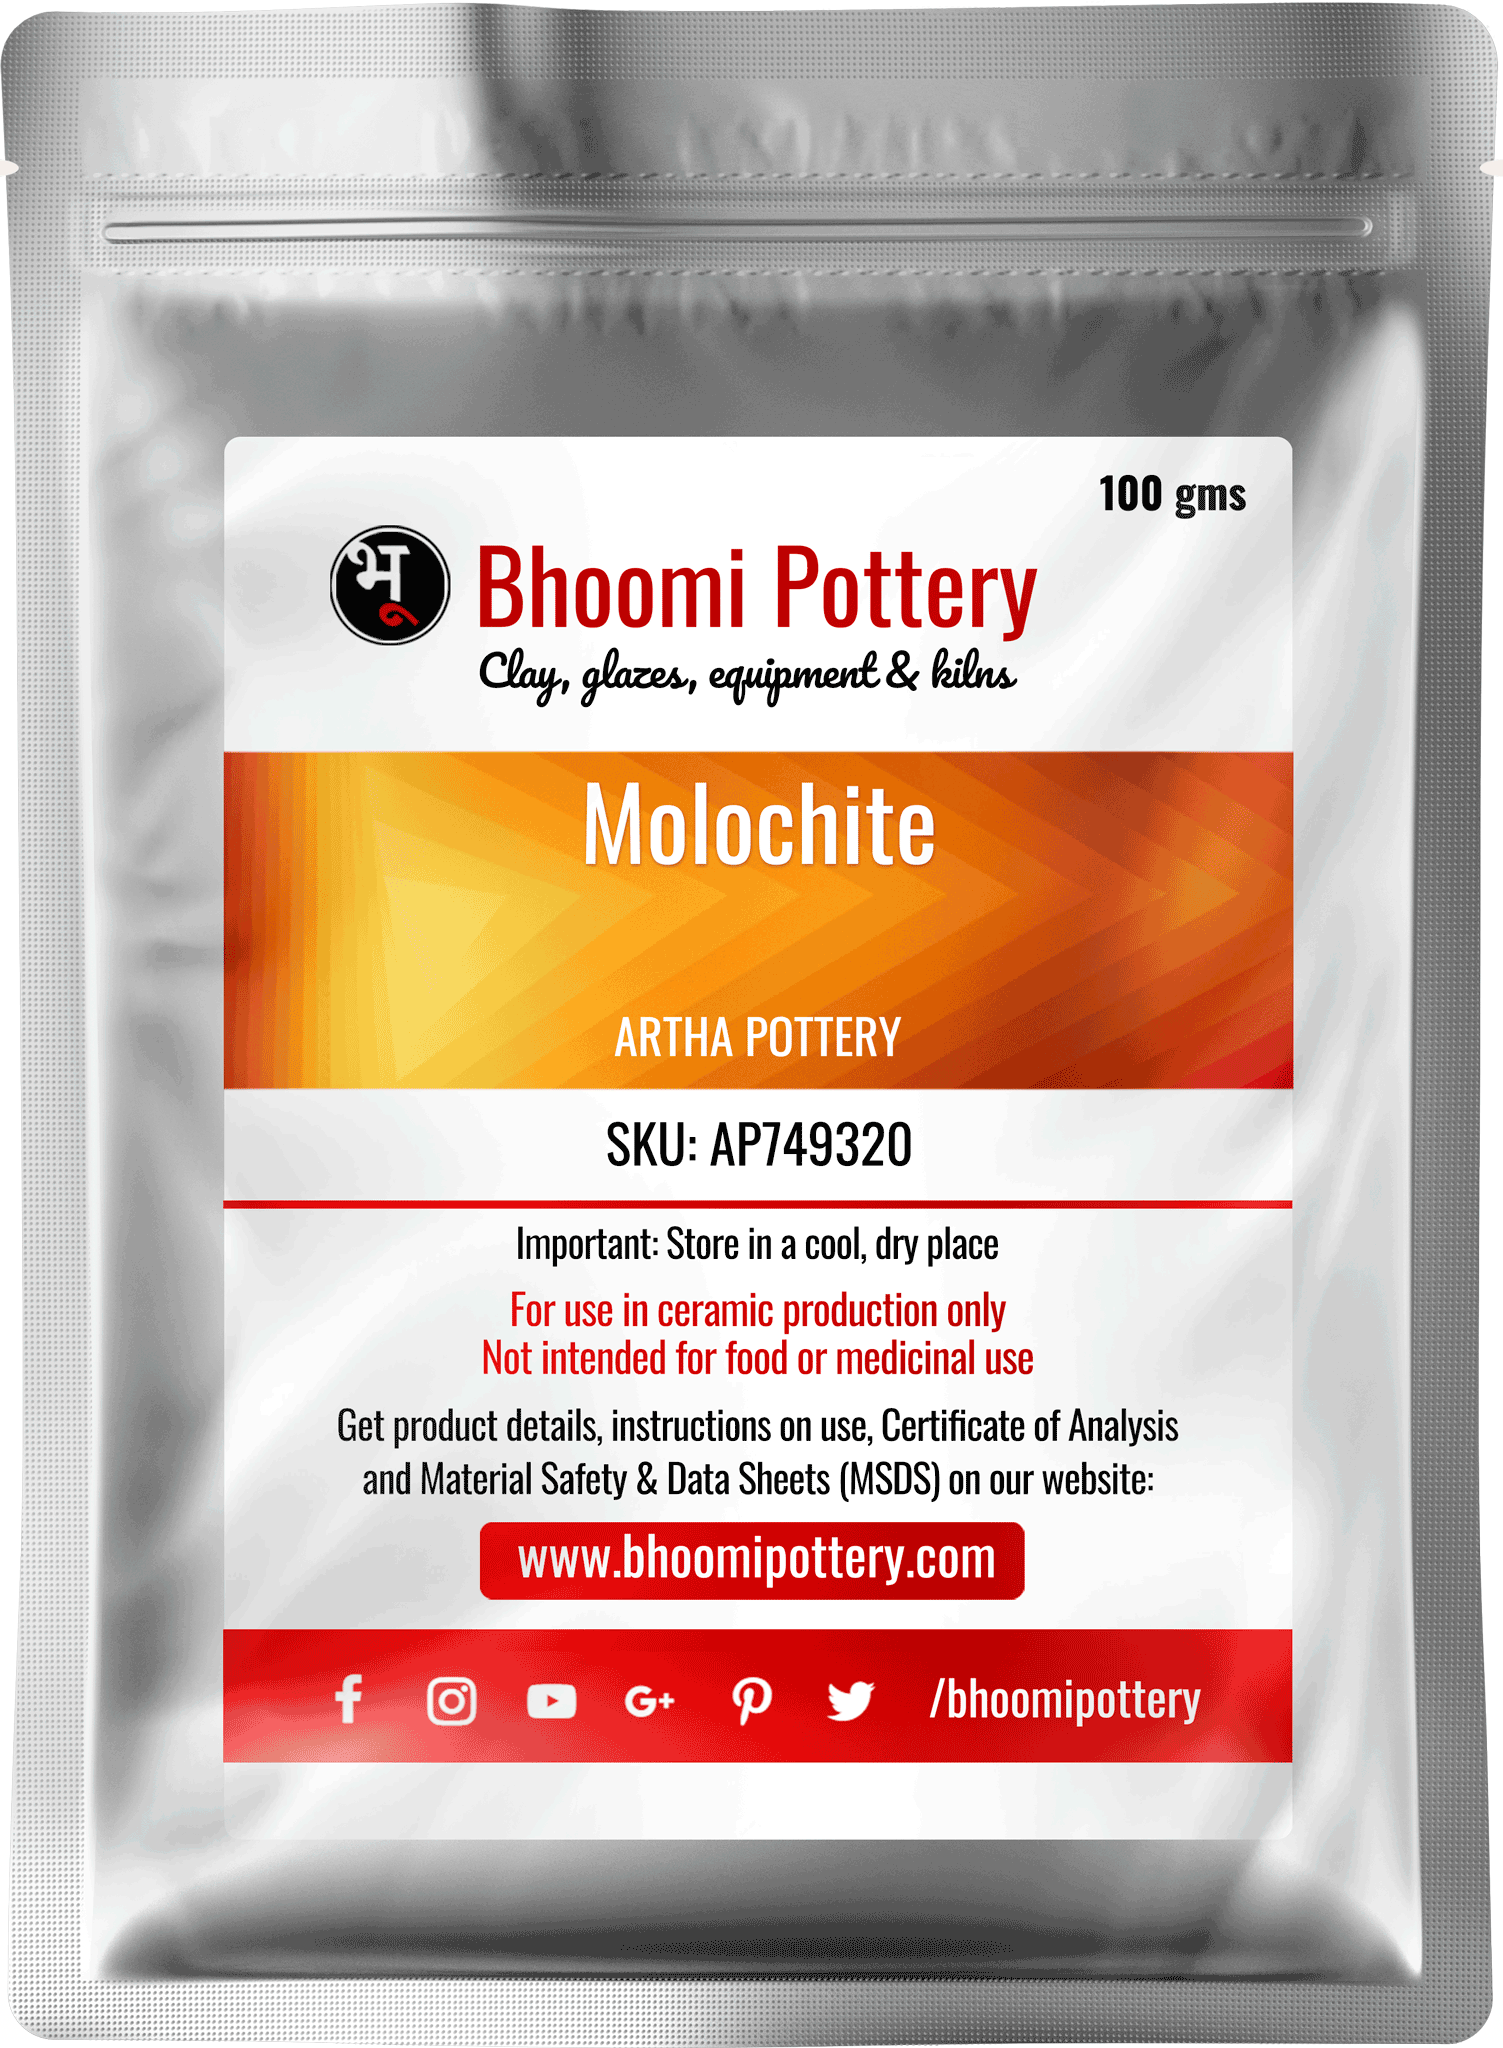 Artha Pottery Molochite for sale in India - Bhoomi Pottery